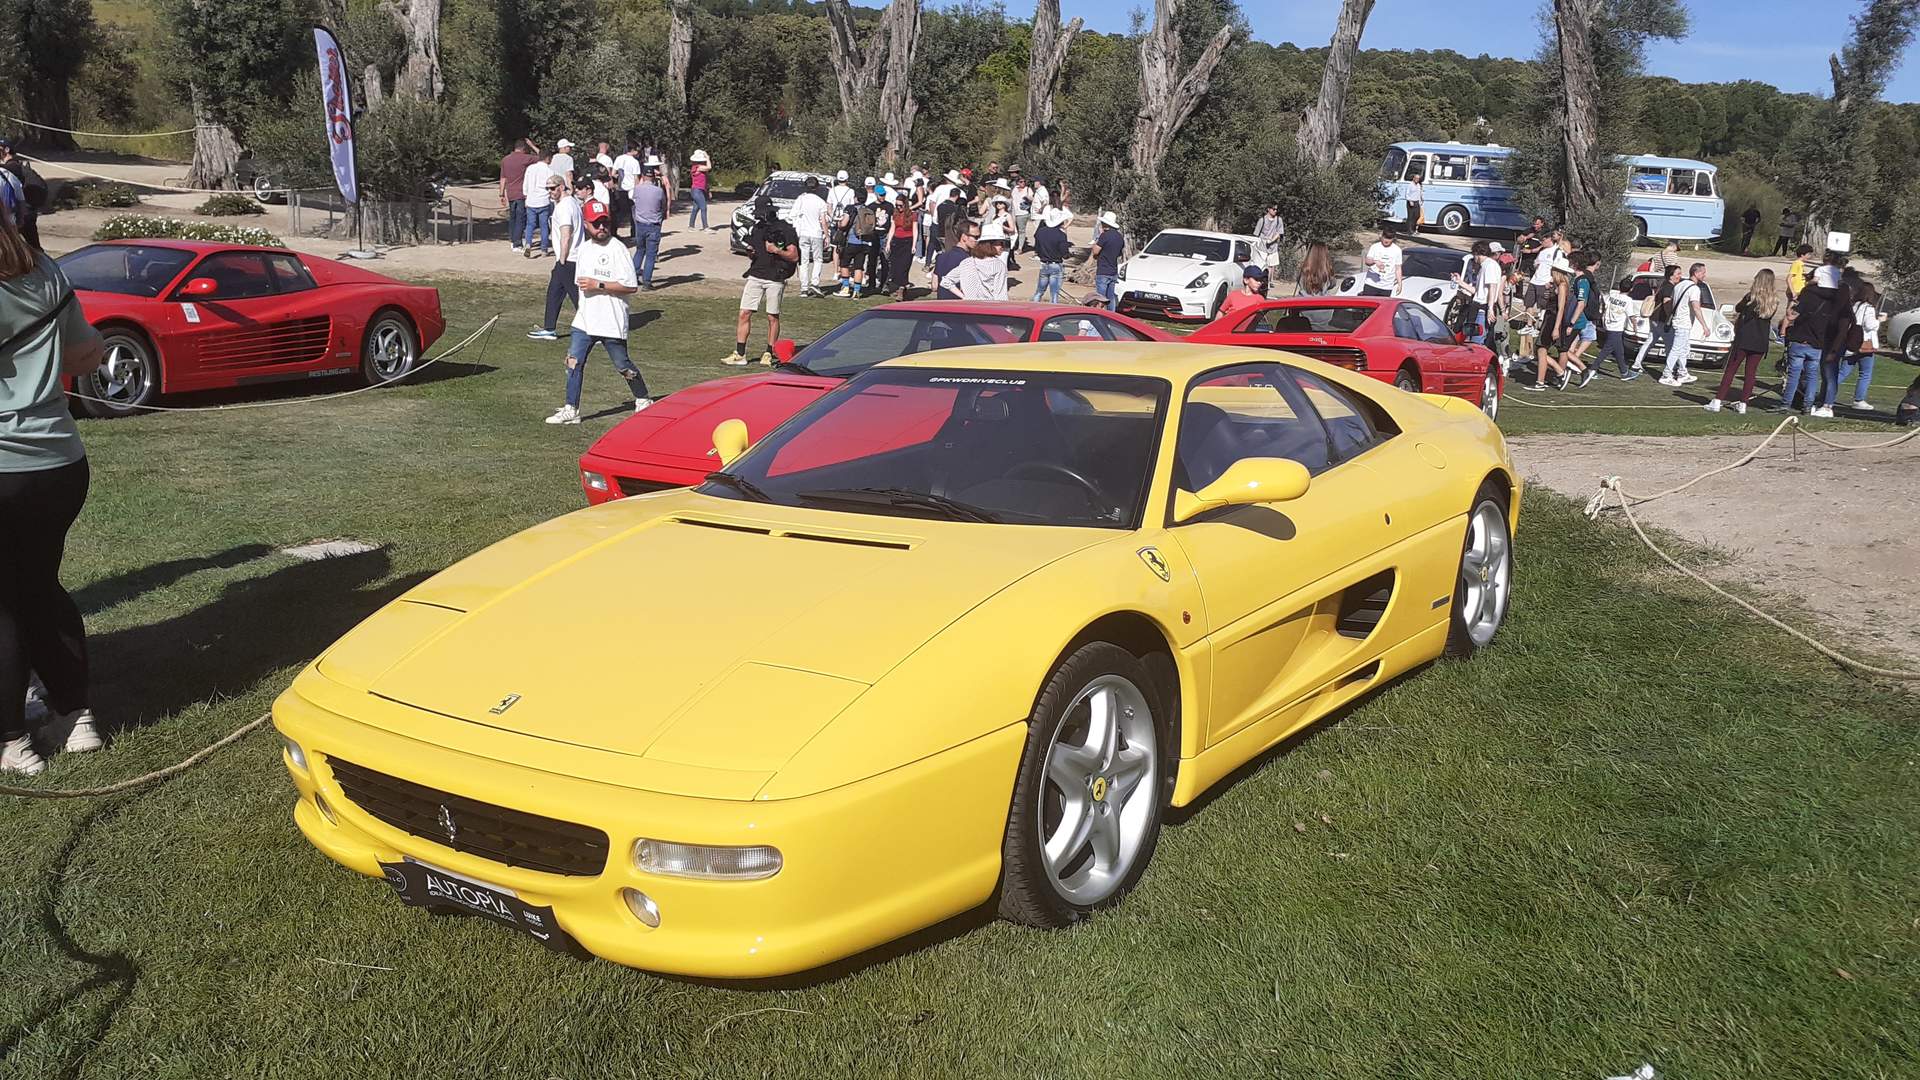 Muy futuristas las líneas del Lamborghini Countach 25 Aniversario de 1988. Monta el motor V12 Lamborghini de 5,2 litros (455 CV).